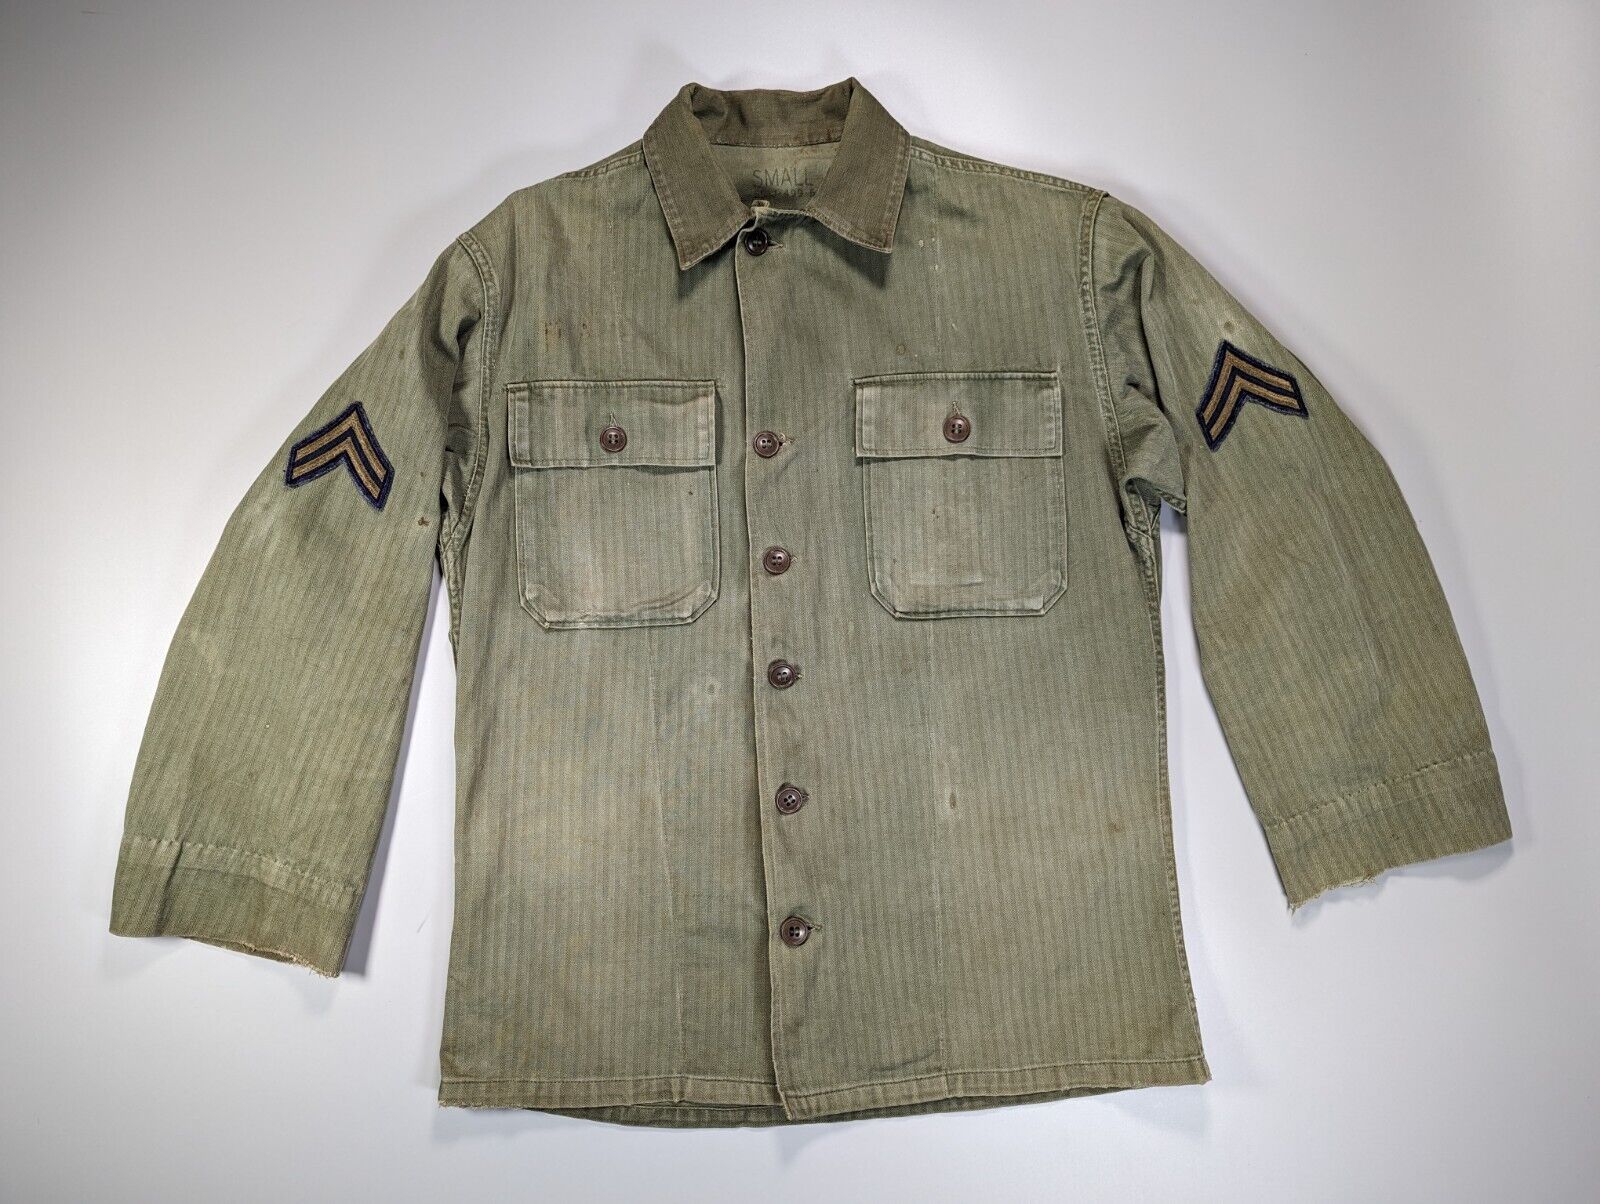 WW2 US Army HBT Herringbone Twill Jacket OD-7 Small 1948 HBT Shirt Vintage 